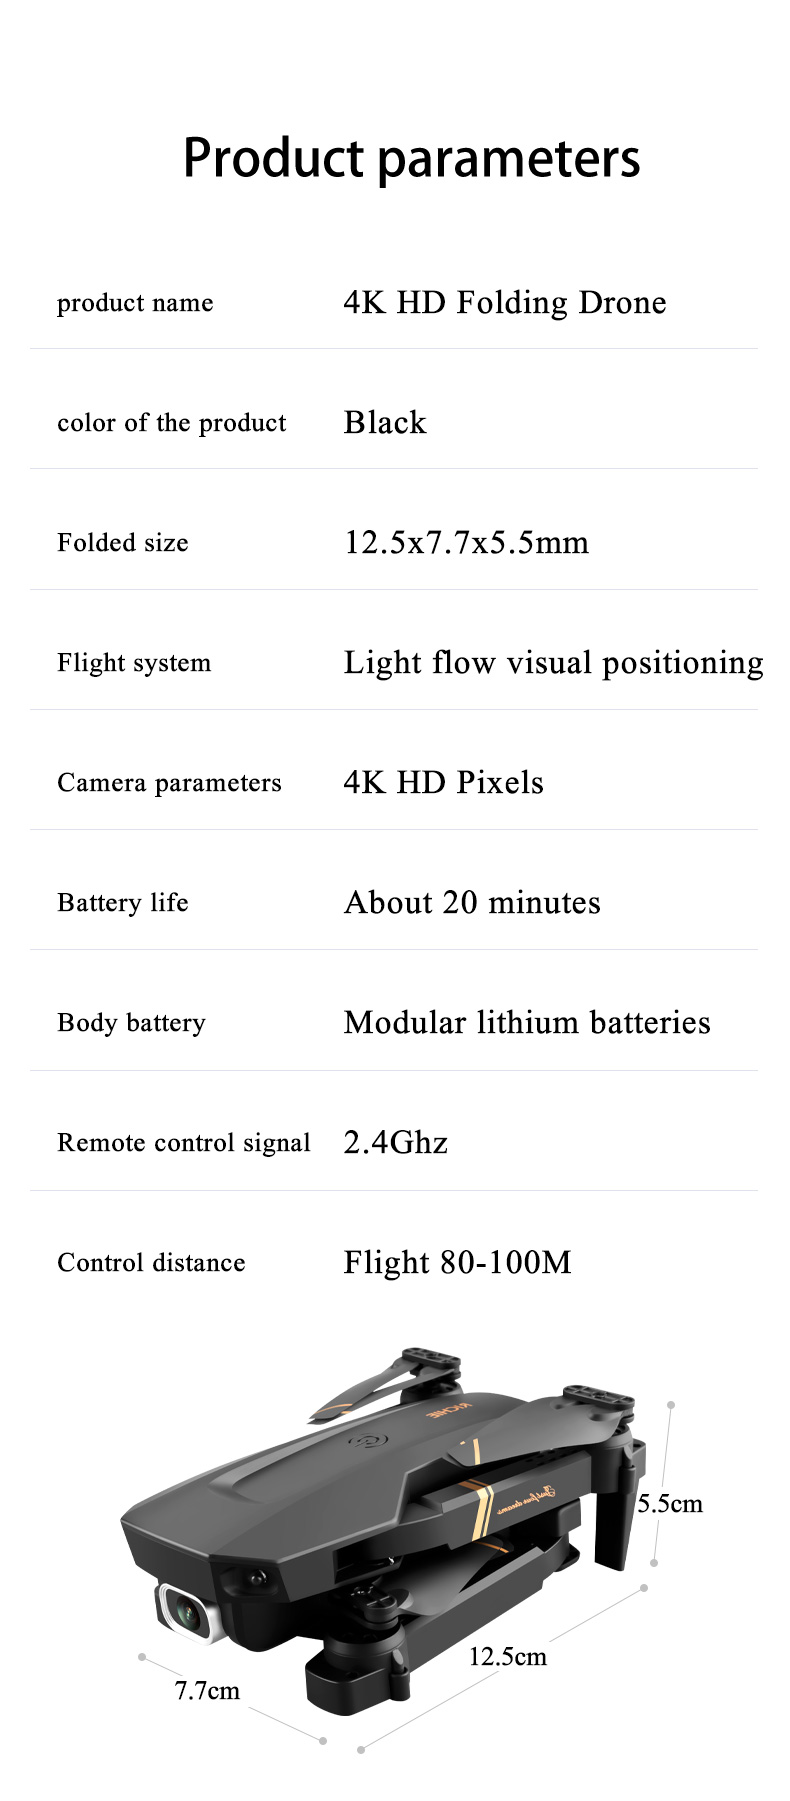 ข้อมูลเกี่ยวกับ Seamo Store กล้องคู่ V4 โดรน 4K HD การถ่ายภาพทางอากาศการควบคุมระยะไกลเครื่องบินพับสี่แกนเครื่องบินนักเรียนเฮลิคอปเตอร์ของเล่น